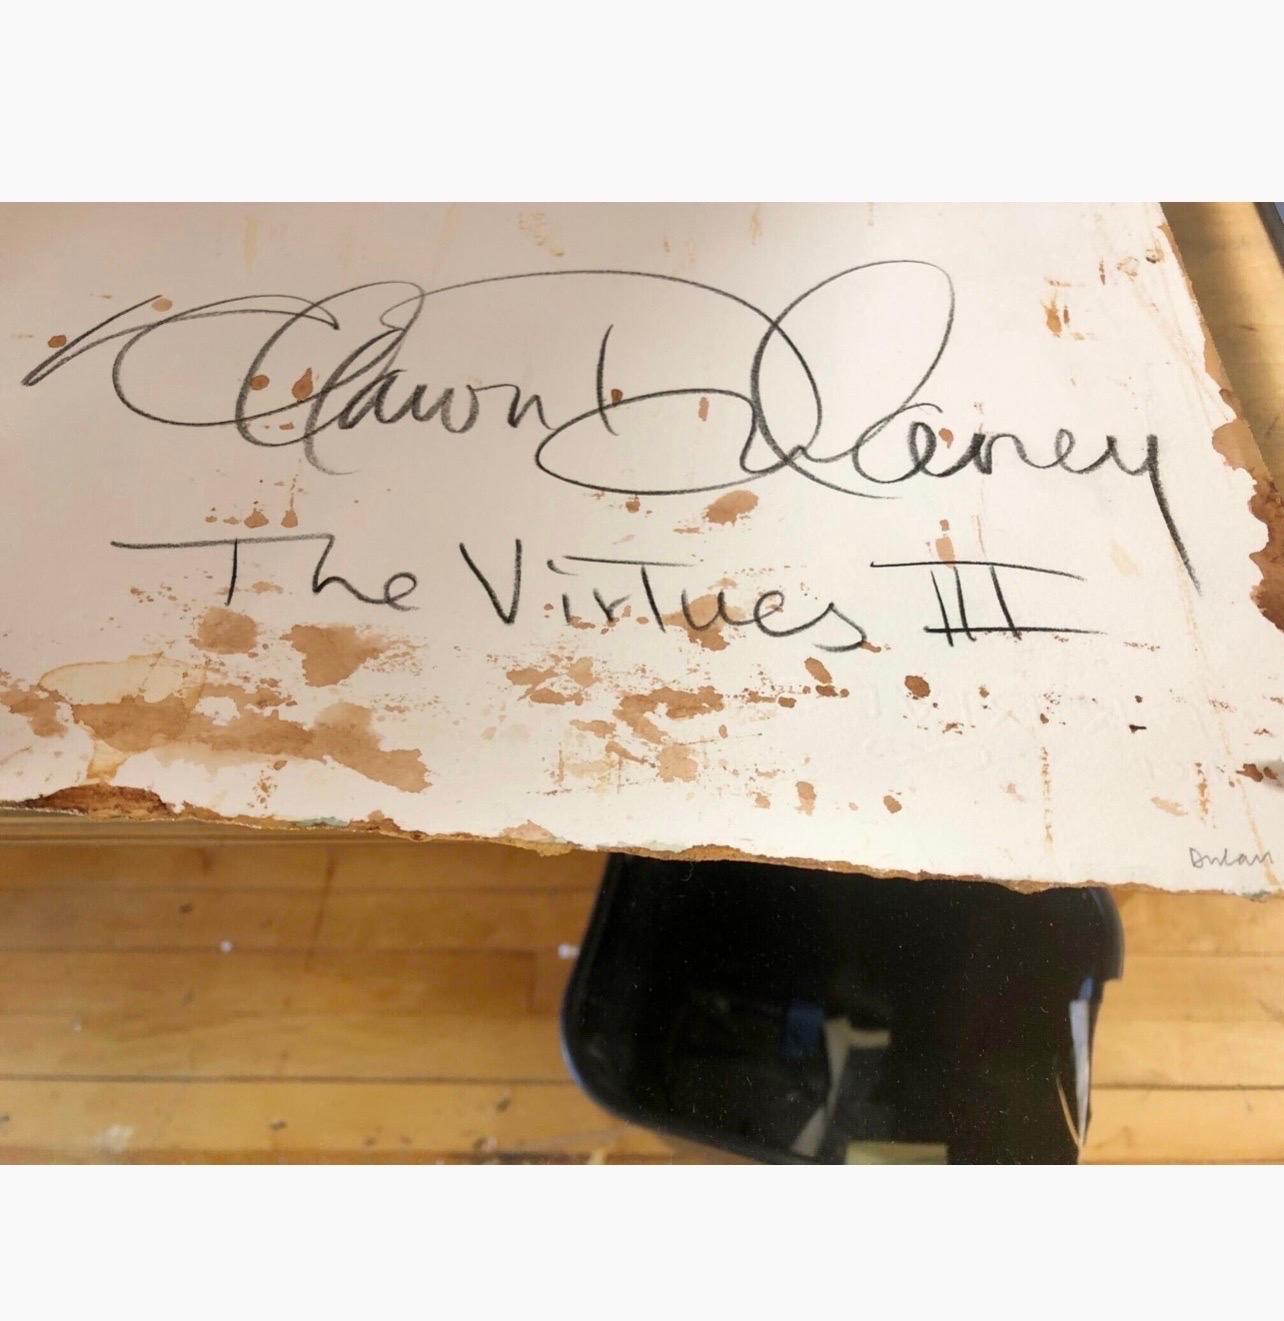 Shawn Dulaney
Die Tugenden IV
Handgemalte Farbe auf venezianischem Gips auf Papier, 
verso signiert und betitelt
22 x 30 Zoll (Blatt), 28 1/4 x 36 1/4 Zoll (Rahmen).

Die Gemälde von Shawn Dulaney sind geschichtete Farbkonstruktionen, raumgreifende